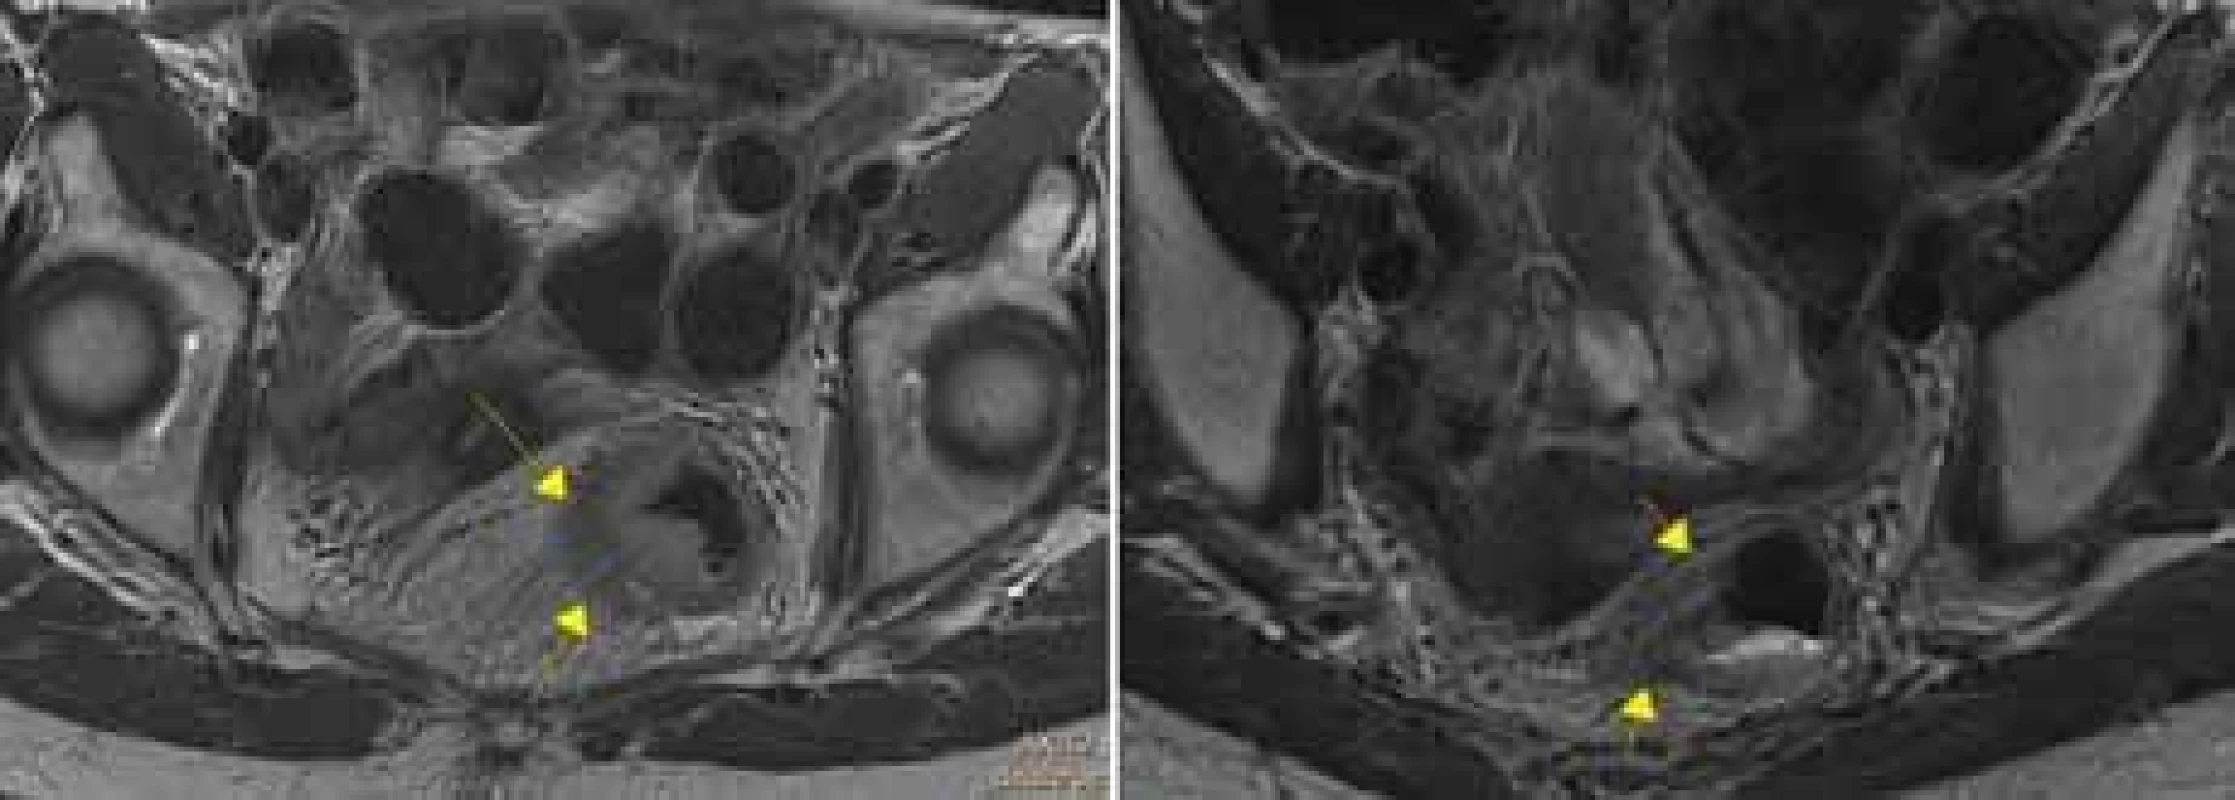 Vlevo: Vstupní MR vyšetření, tumorózní infi ltrace stěny rekta s prorůstáním
do okolního tuku, cT3b N2 M0. Vpravo: Kontrolní MR vyšetření po proběhlé neoadjuvantní radiochemoterapii, trvají patologické intenzity v přilehlém tuku, hodnoceno
jako ycTx N1 M0. Dle patologa po resekci ypT3 N0, stupeň regrese Dworak 1. 